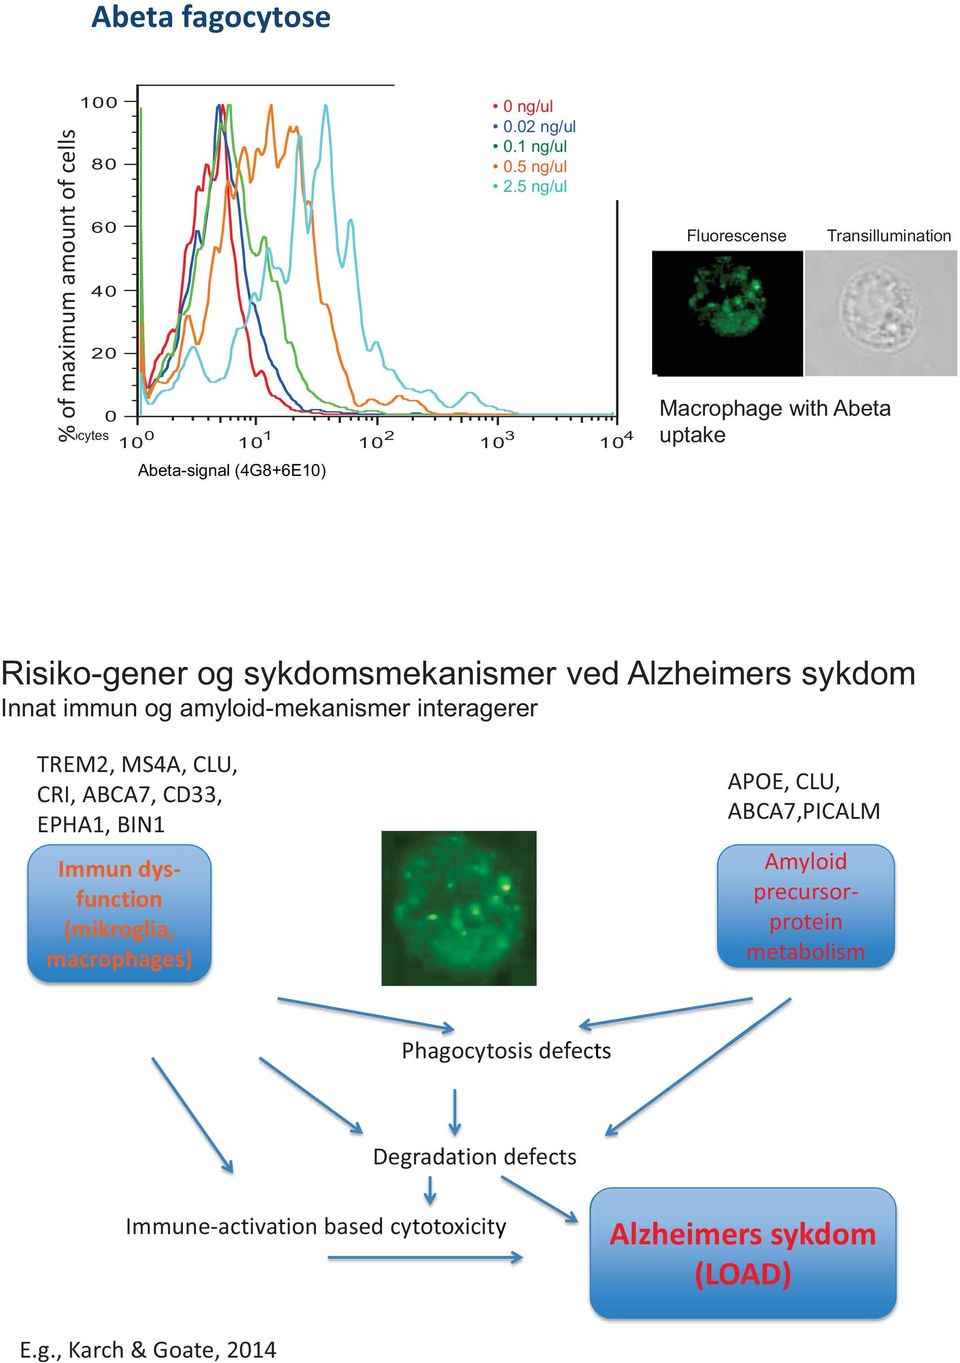 5 ng/ul 10 1 10 2 10 3 10 4 Fluorescense Transillumination Macrophage with Abeta uptake Risiko-gener og sykdomsmekanismer ved Alzheimers sykdom Innat immun og amyloid-mekanismer interagerer